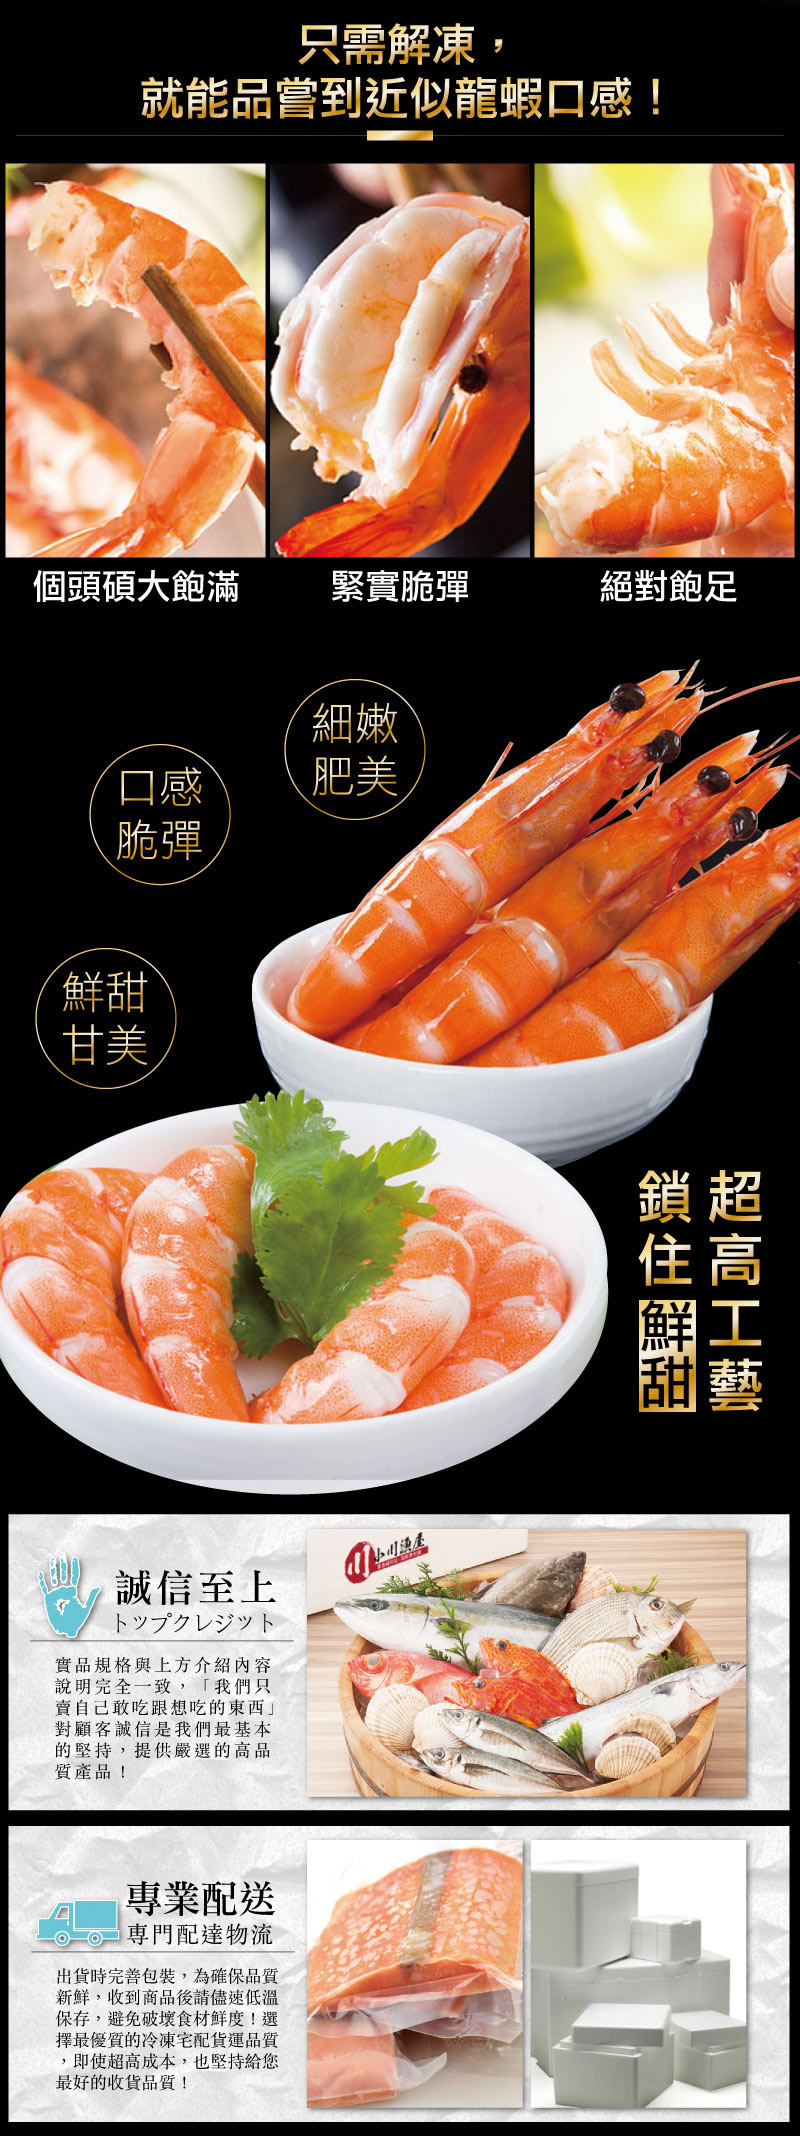 【小川漁屋】巨霸金鑽大白蝦熟食調理包500g (退冰即食)